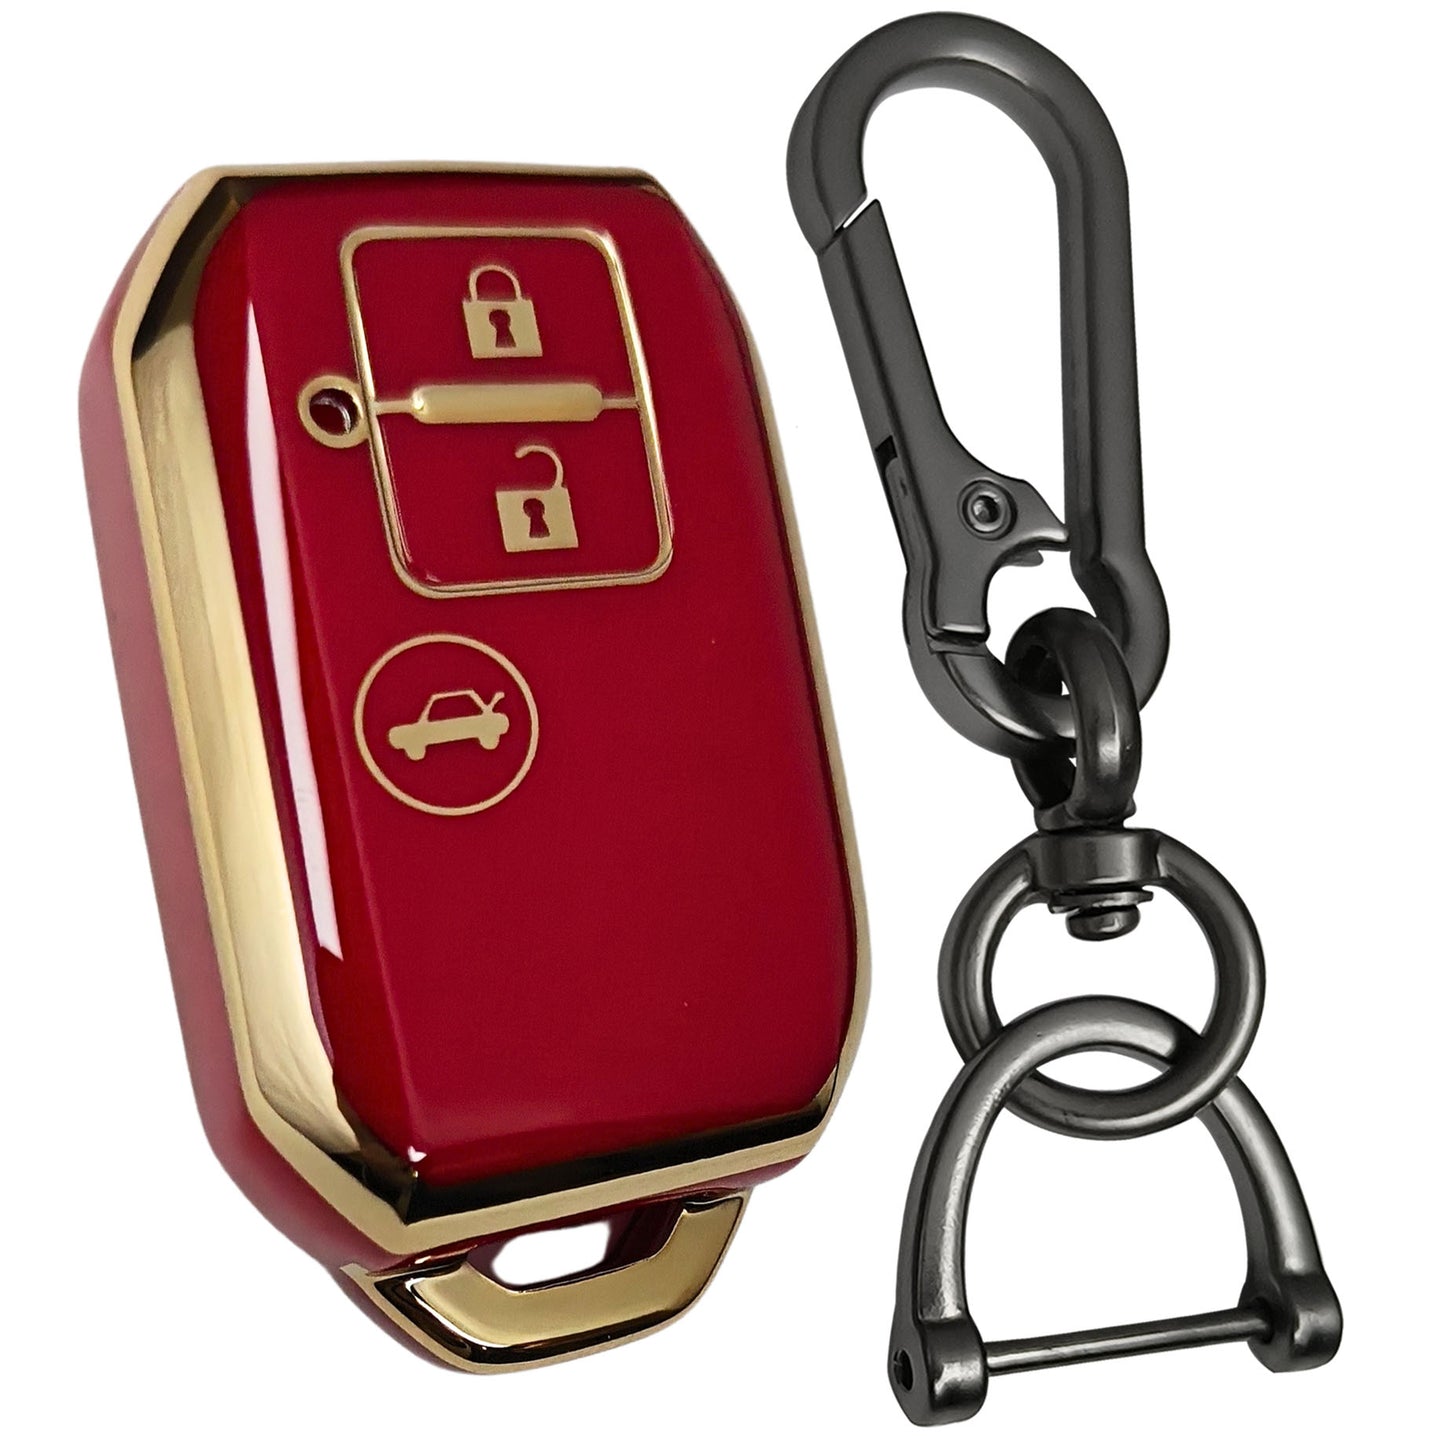 suzuki dzire ertiga swift baleno 3b smart tpu key cover red key accessories keychain